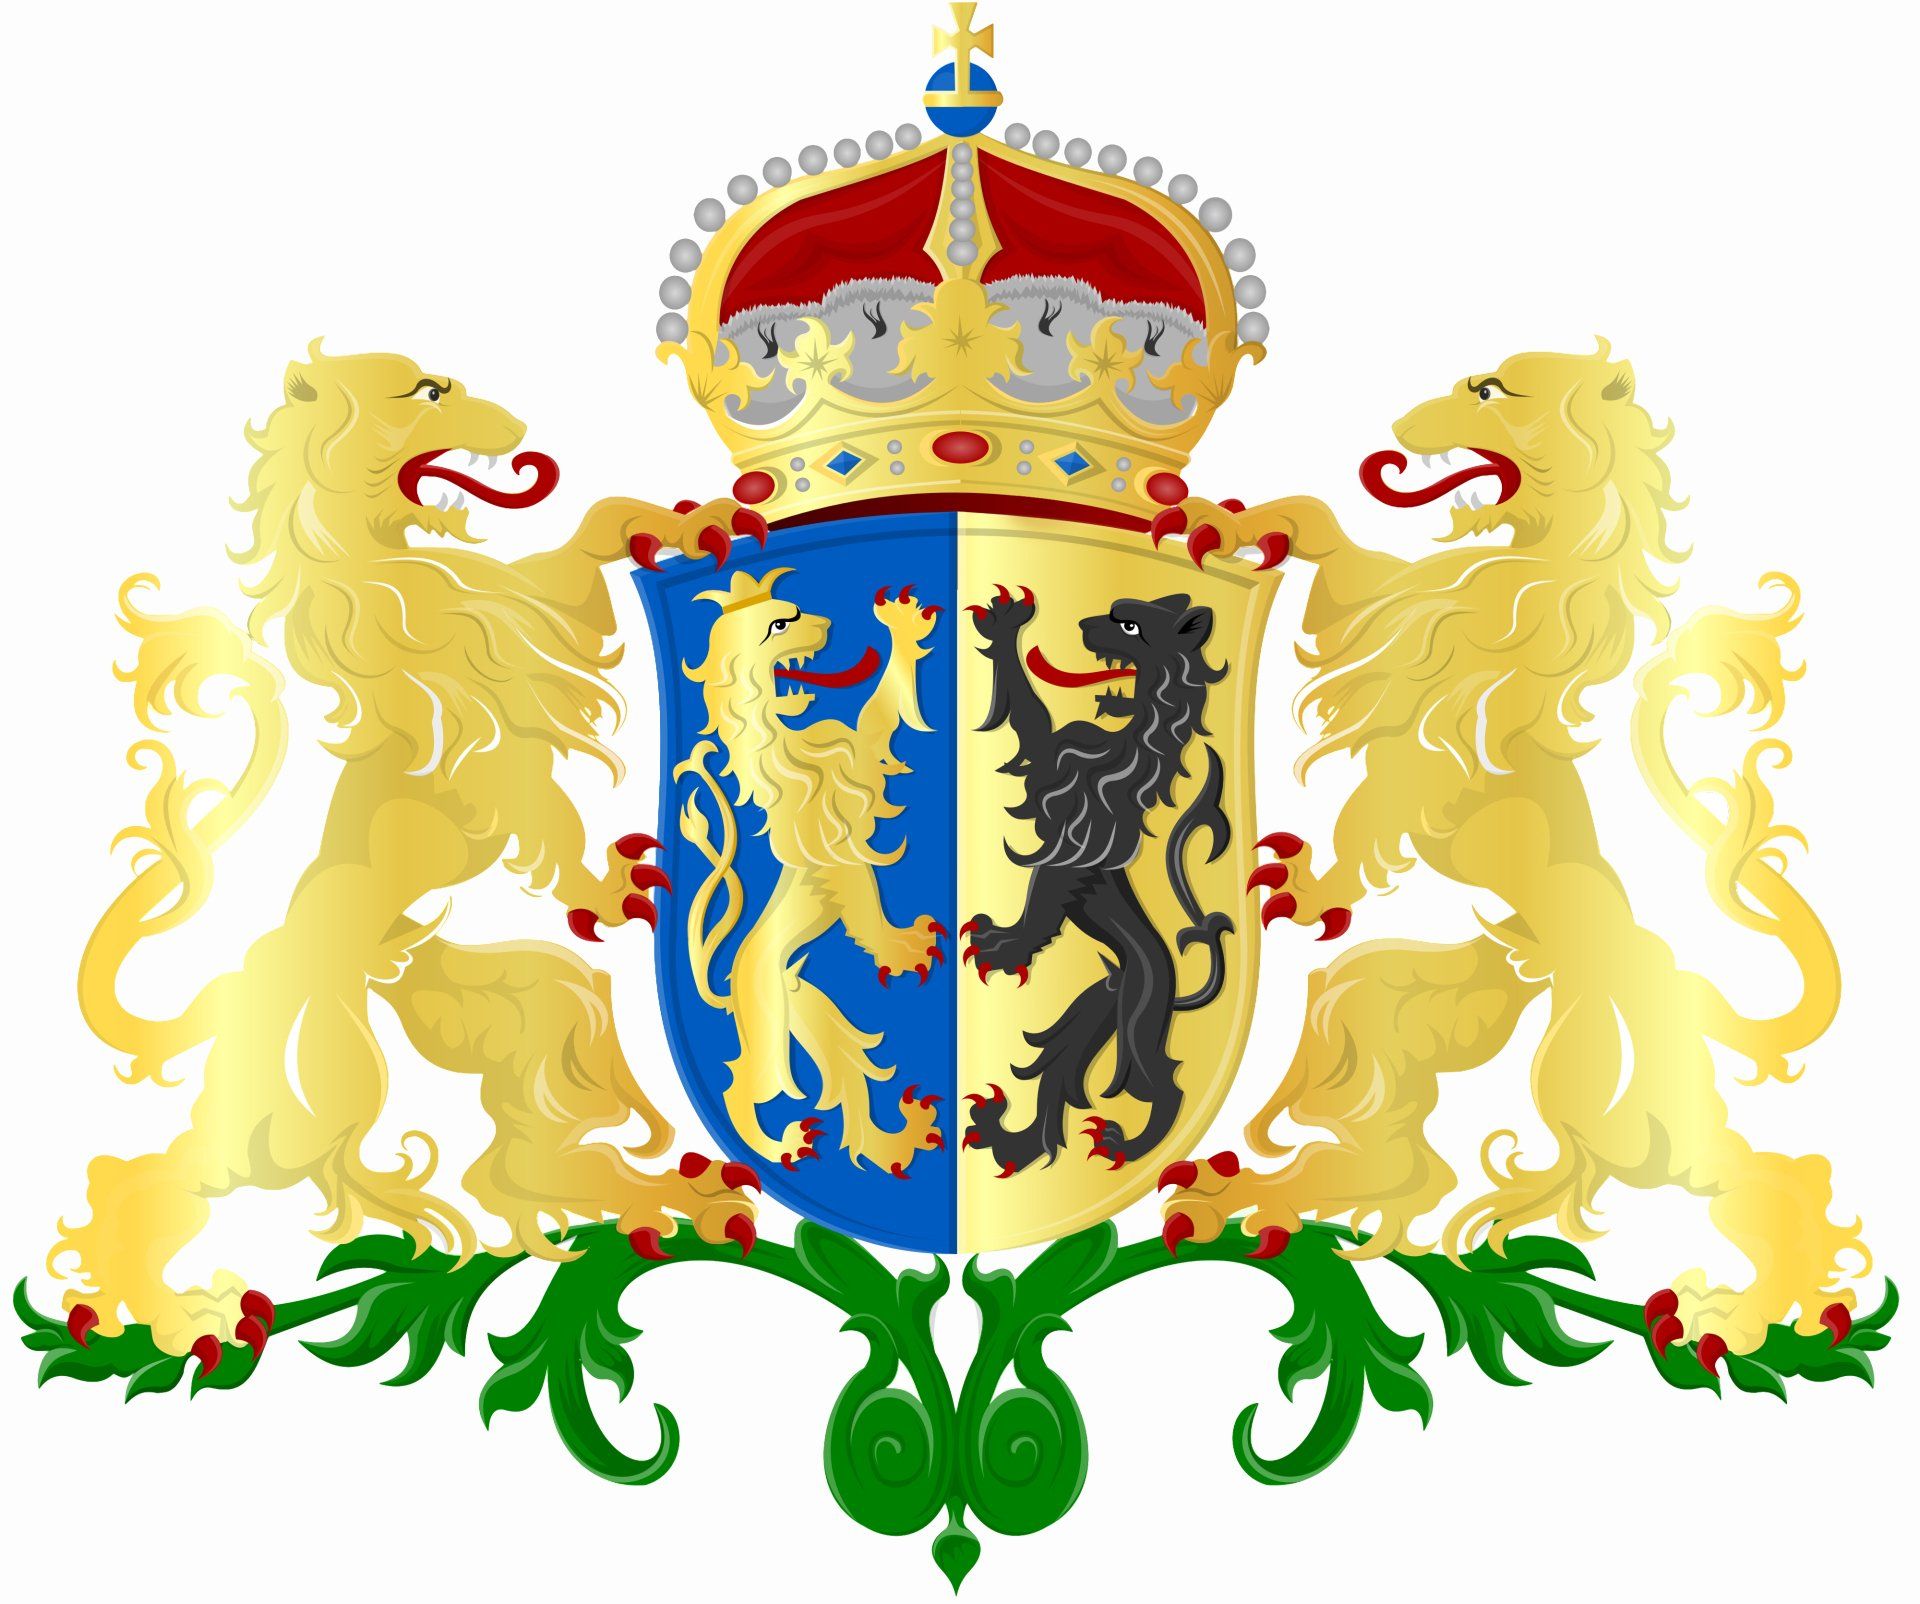 wapen van Gelderland, 2 staande gouden leeuwen op een witte achtergrond, 1 staande gouden leeuw op een blauwe achtergrond en 1 staande zwarte leeuw op een gouden achtergrond.